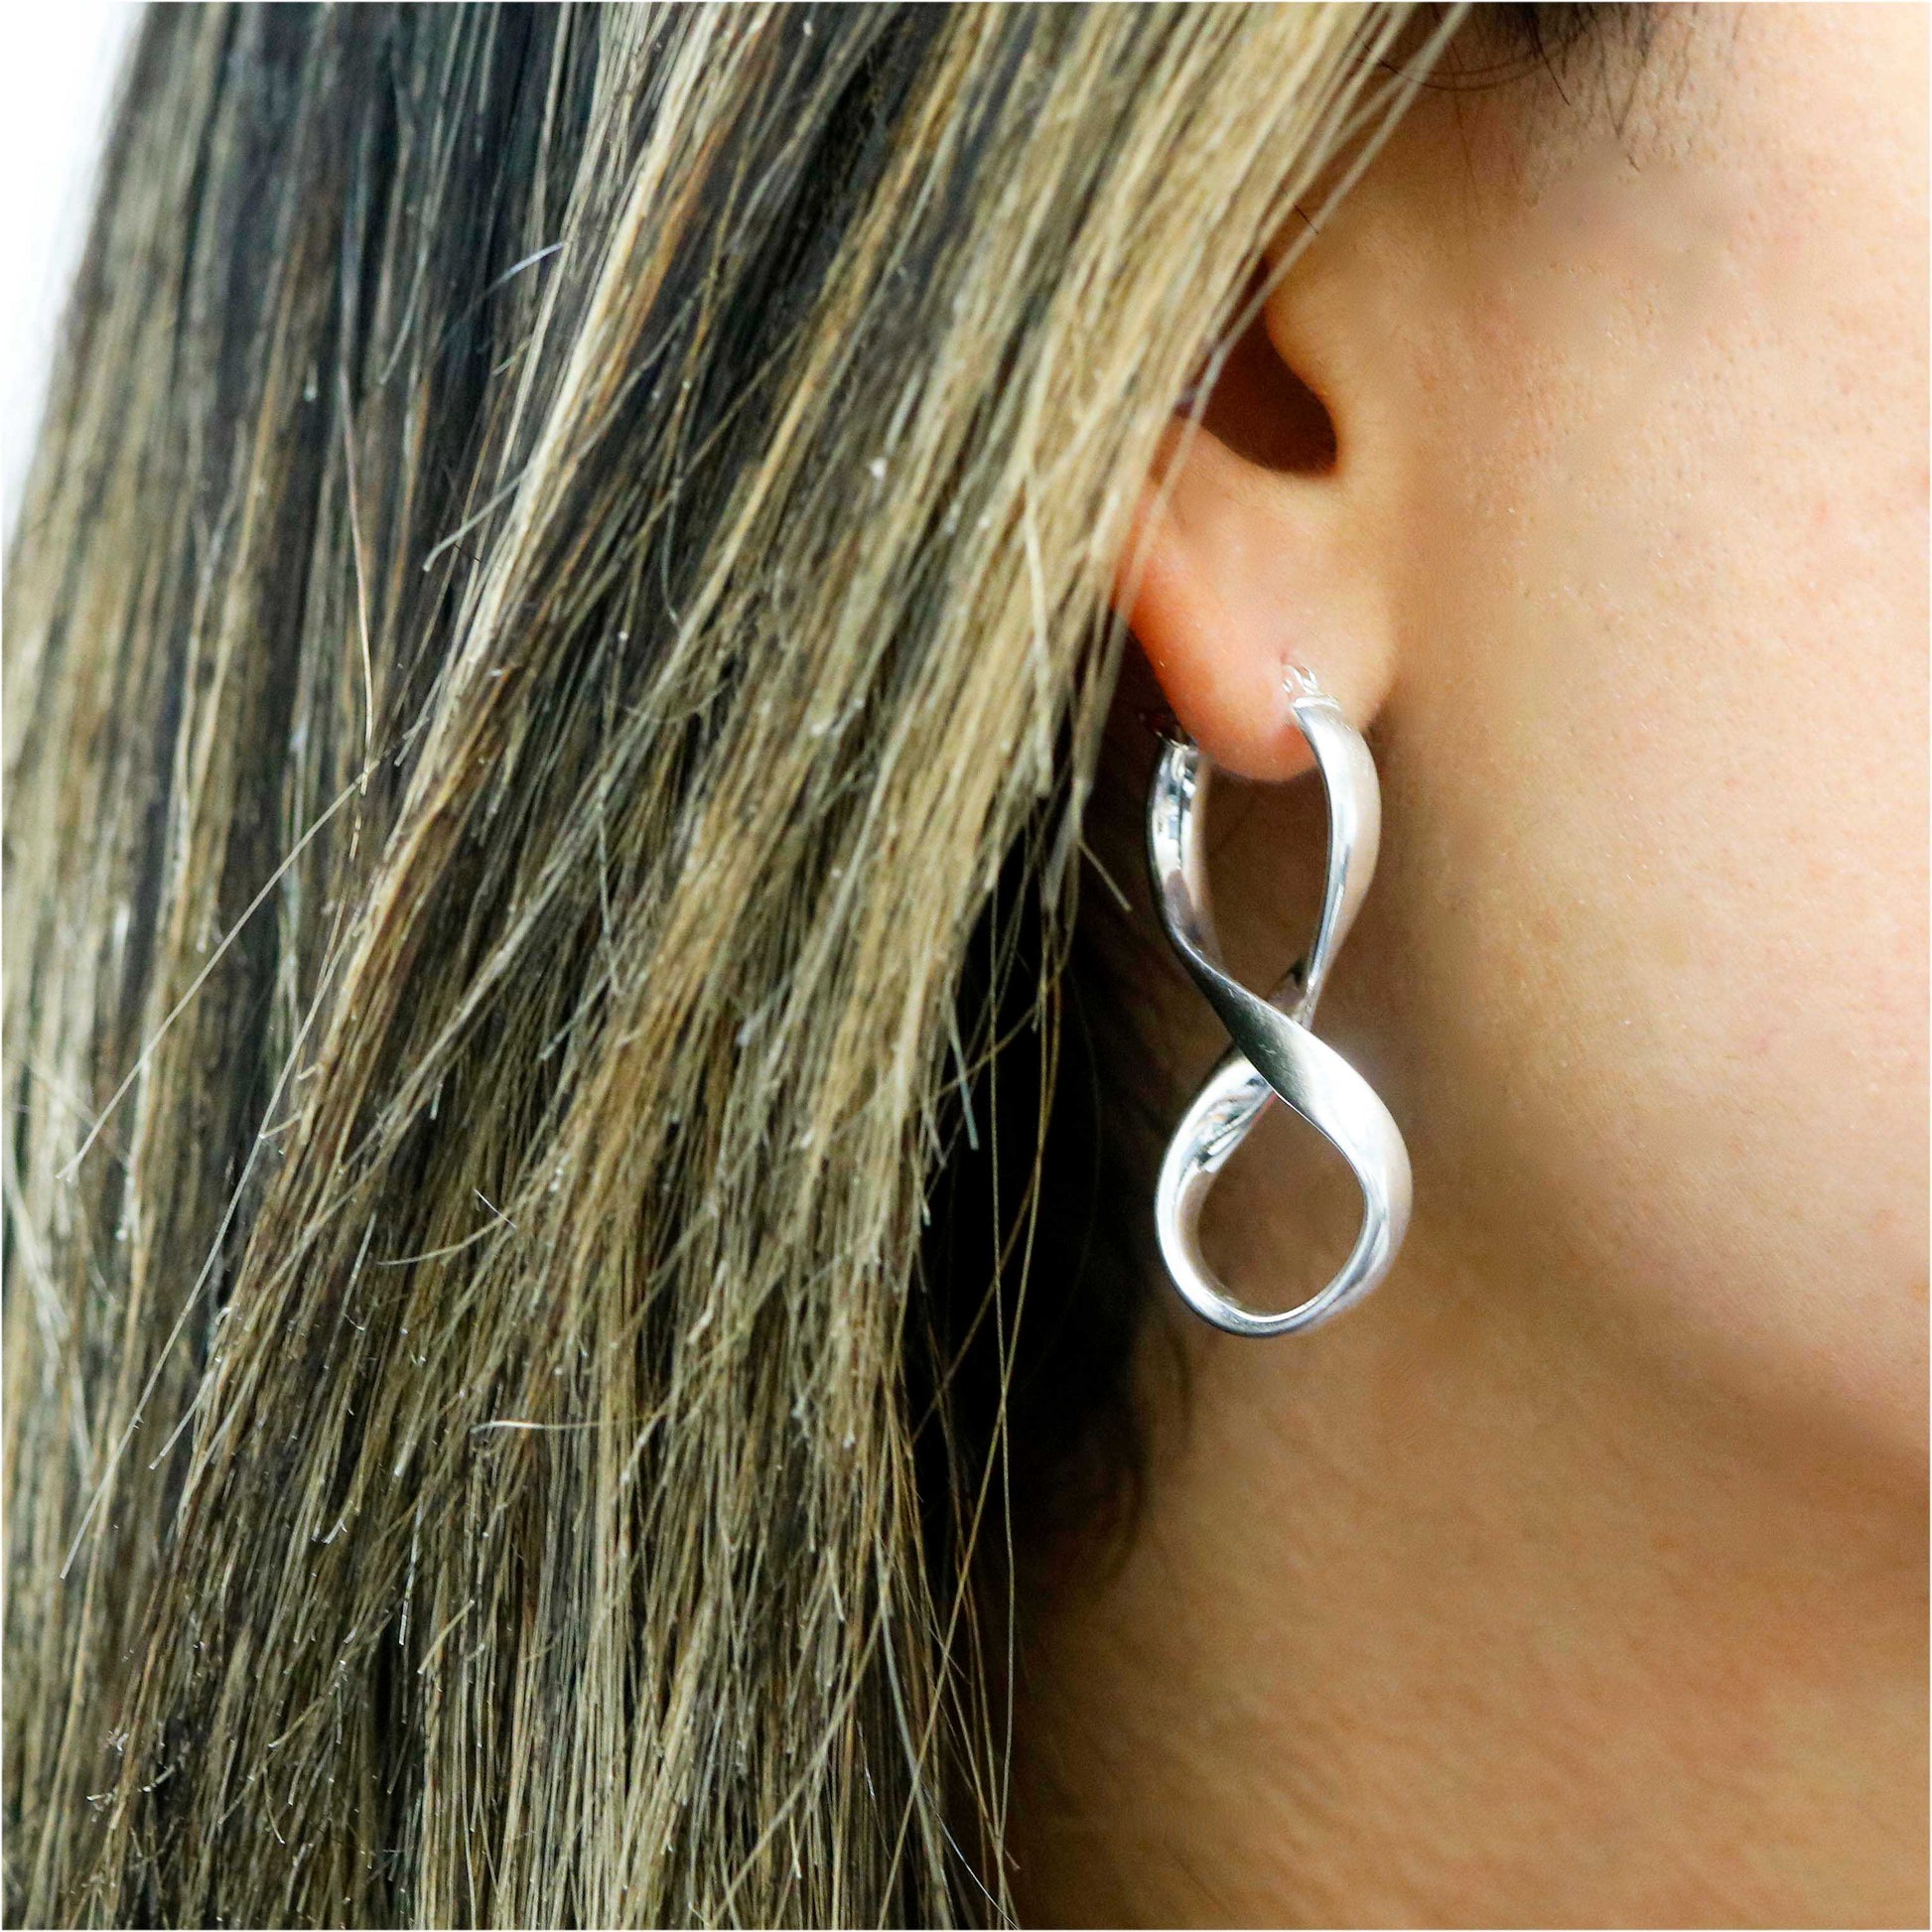 Solid Sterling Silver Figure 8 Earrings On Ear